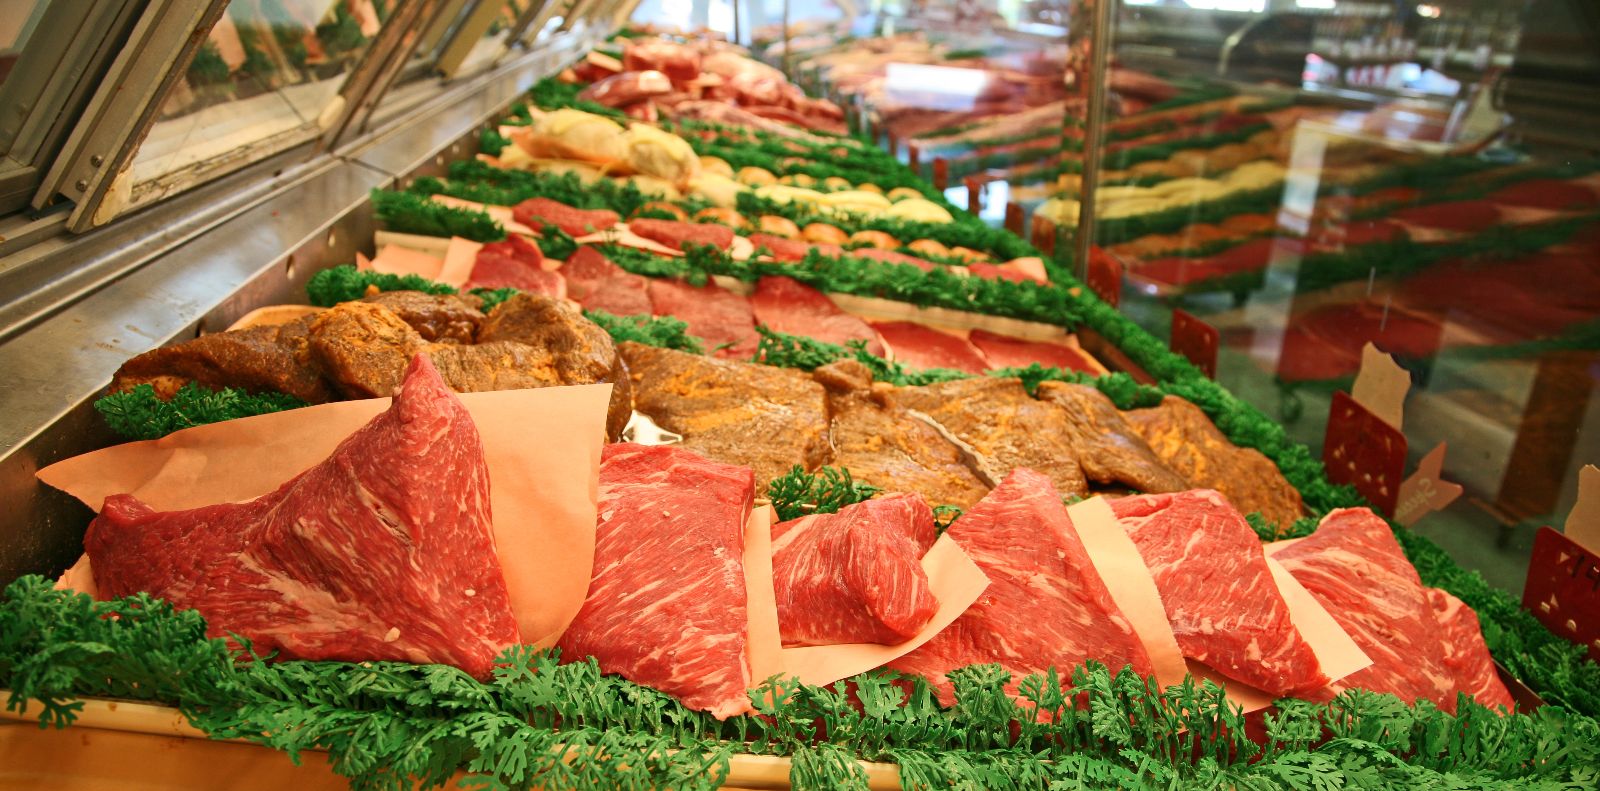 Снизить стоимость мясных продуктов в магазинах можно за счёт сокращения издержек производства